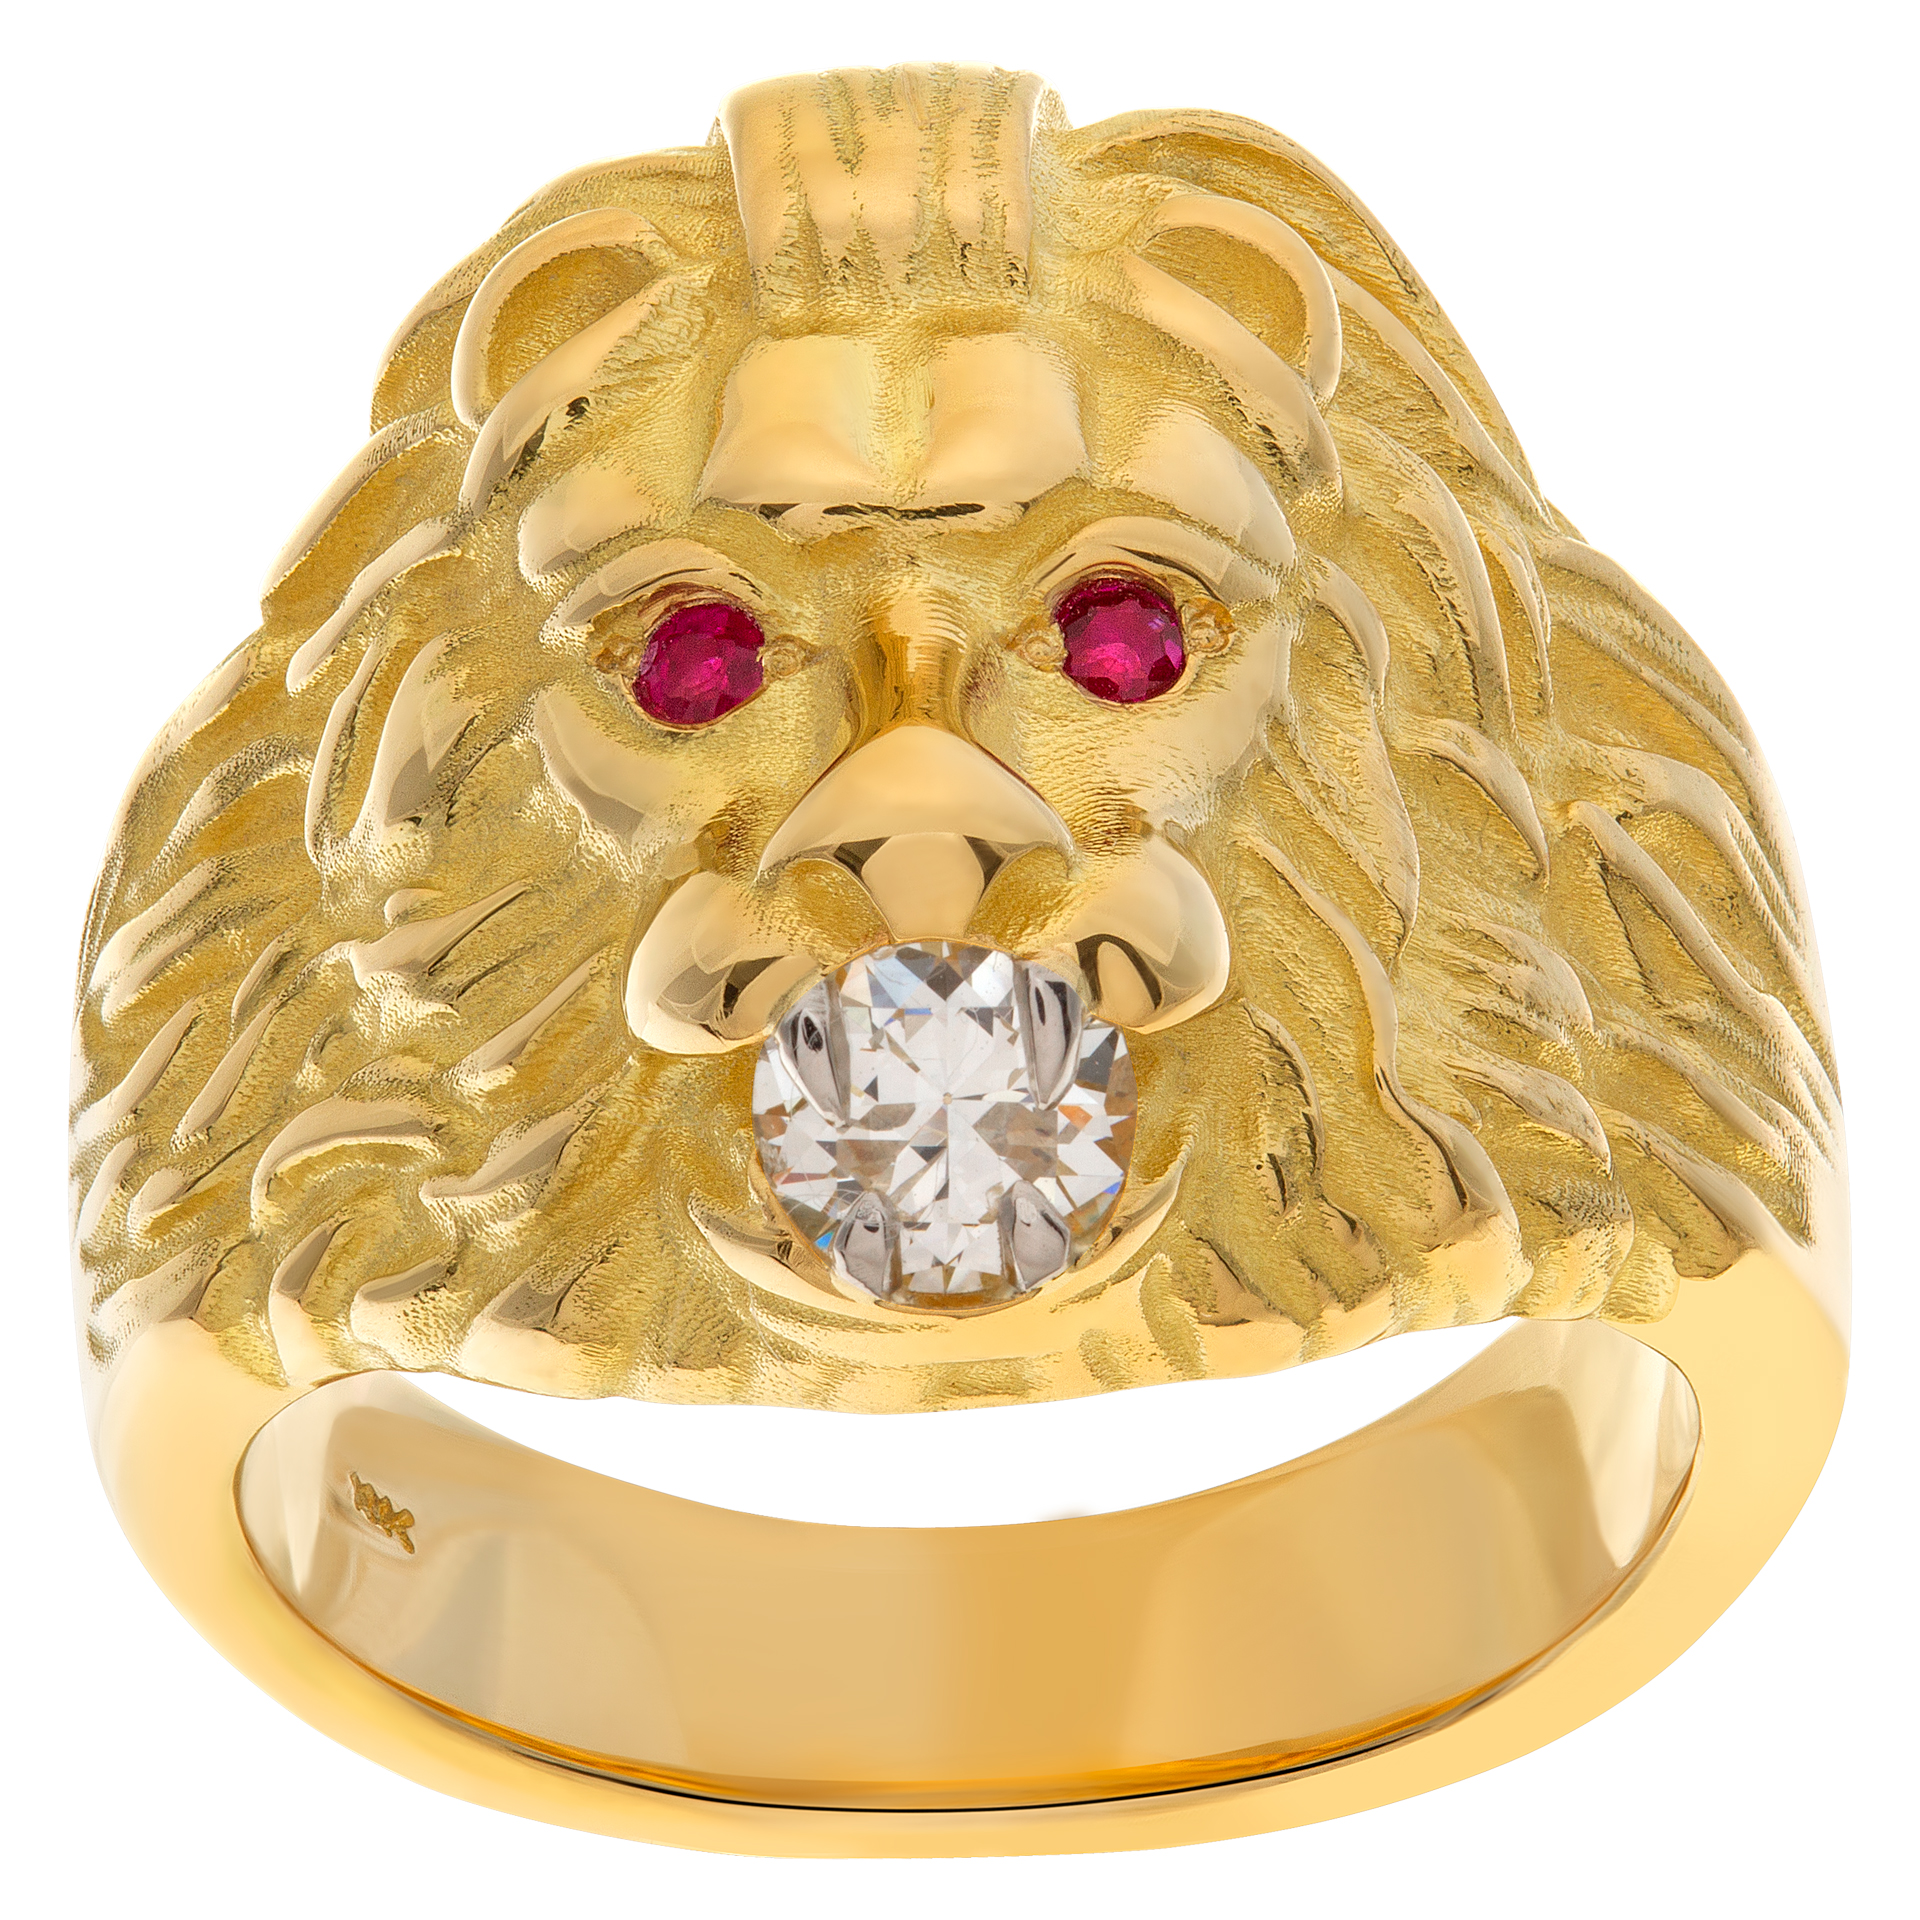 Lion of Judah ring with Platinum Teeth Holding GIA 0.52 Carat Diamond Ruby Eyes Set In 18k